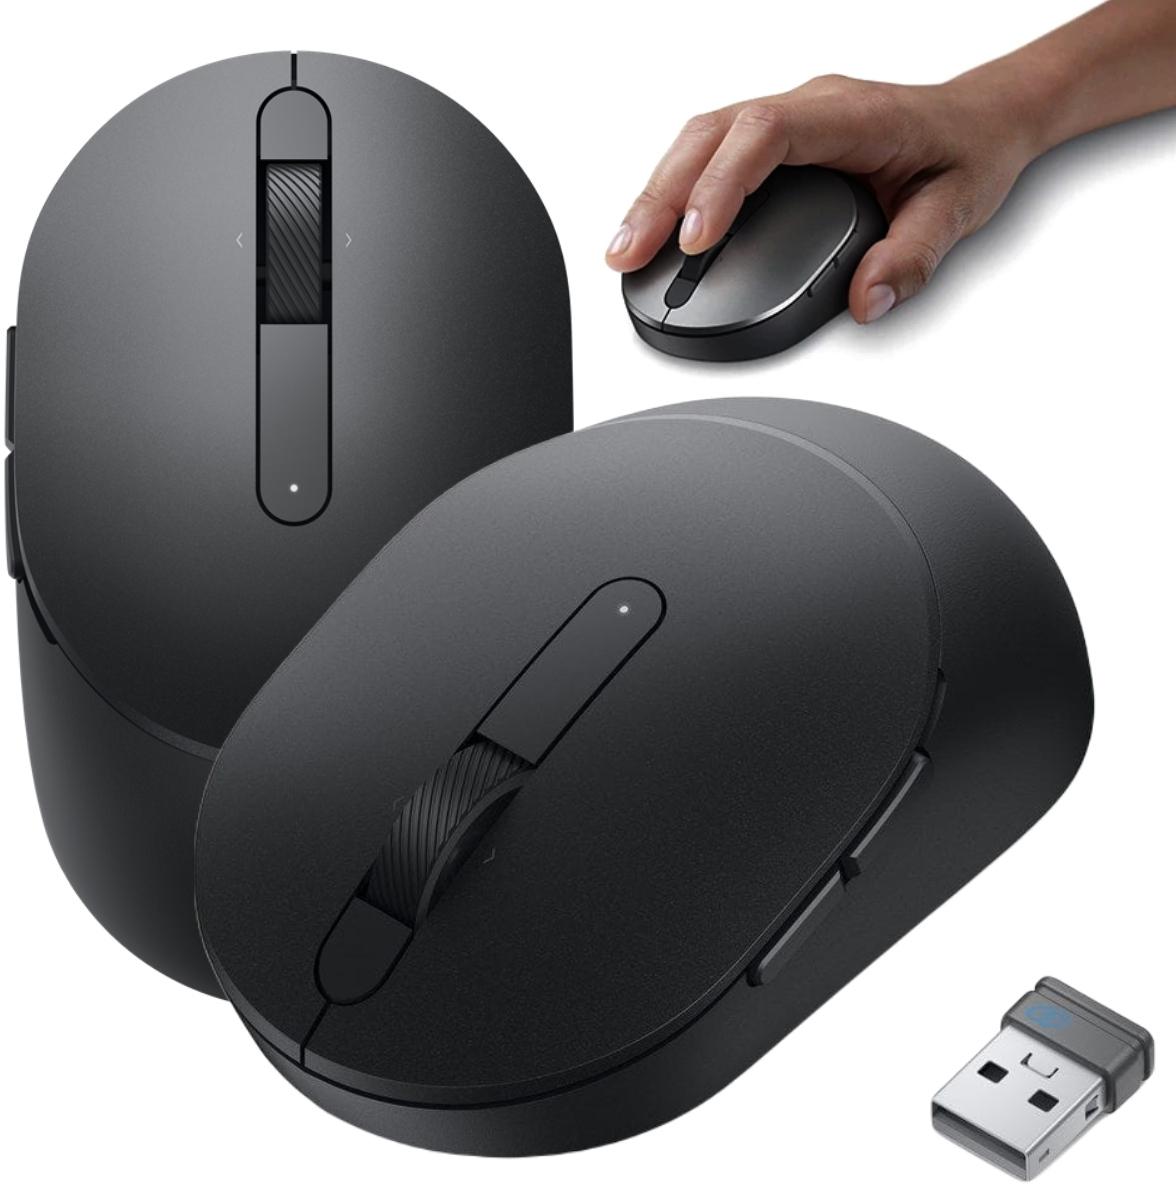 Czarna bezprzewodowa optyczna mysz oburęczna Dell MS5120W Pro Wireless Mouse - najważniejsze cechy: